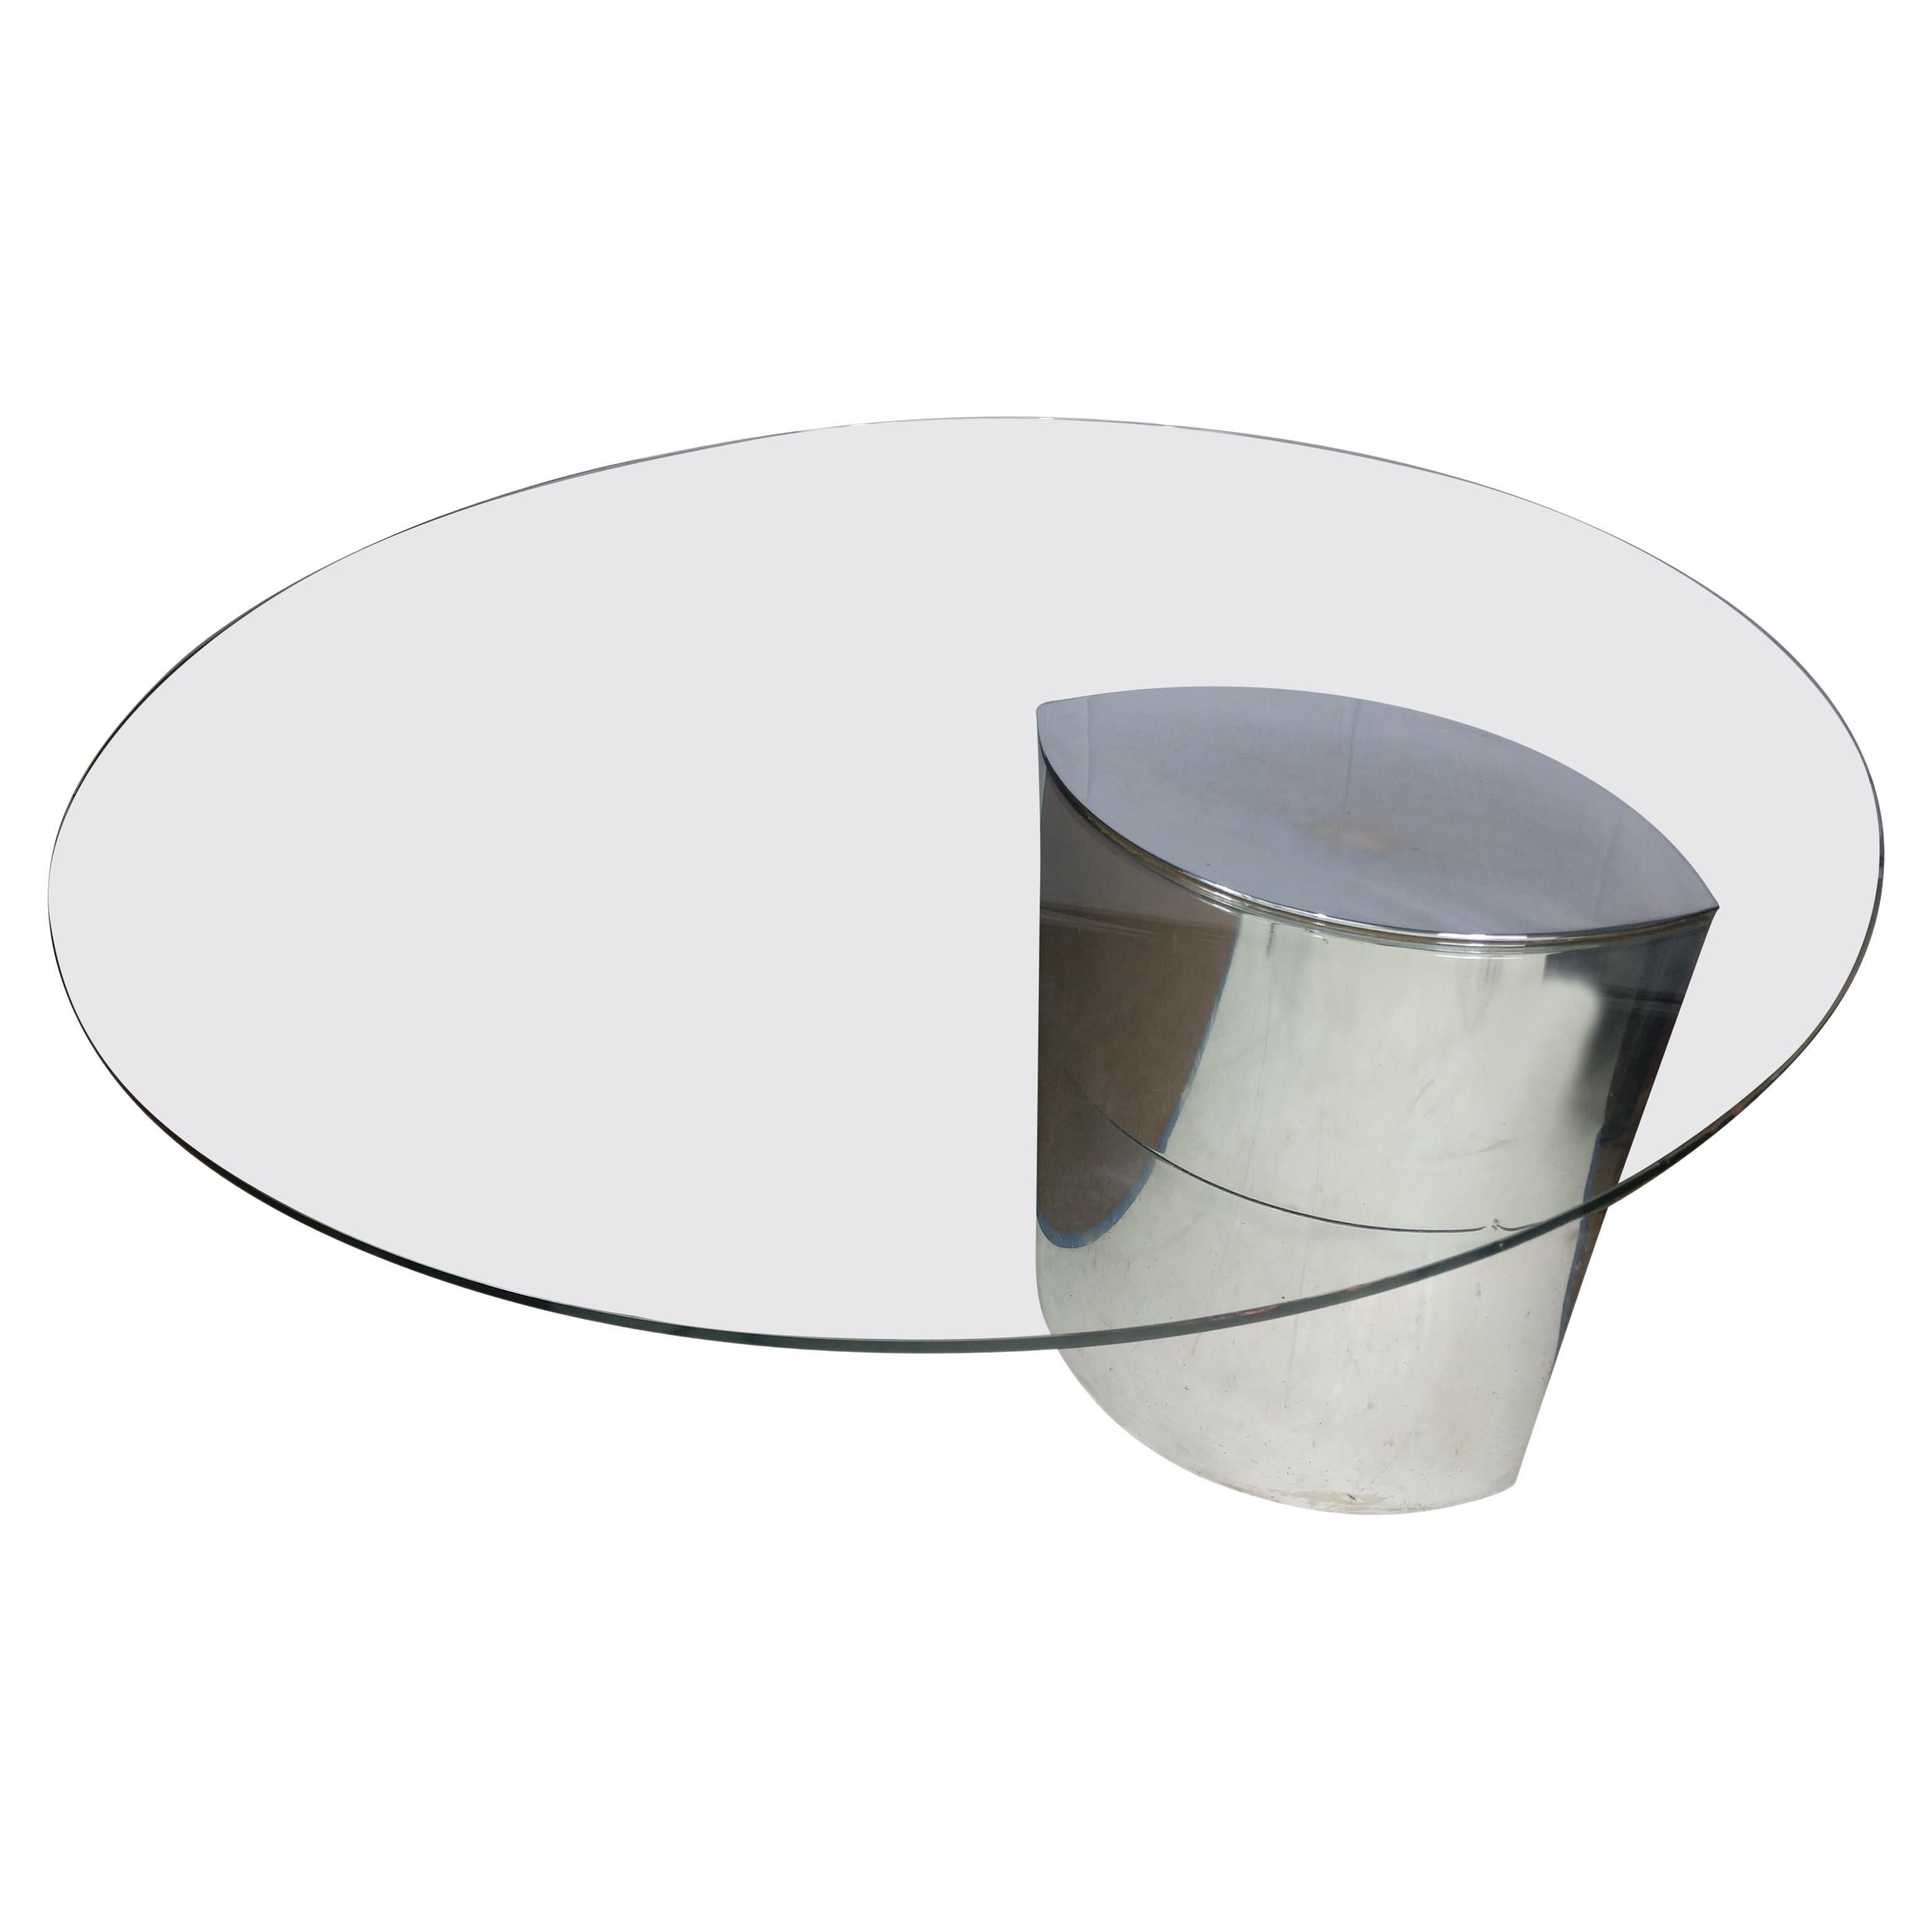 Modernist Cini Boeri for Knoll International Dining Table Desk For Sale